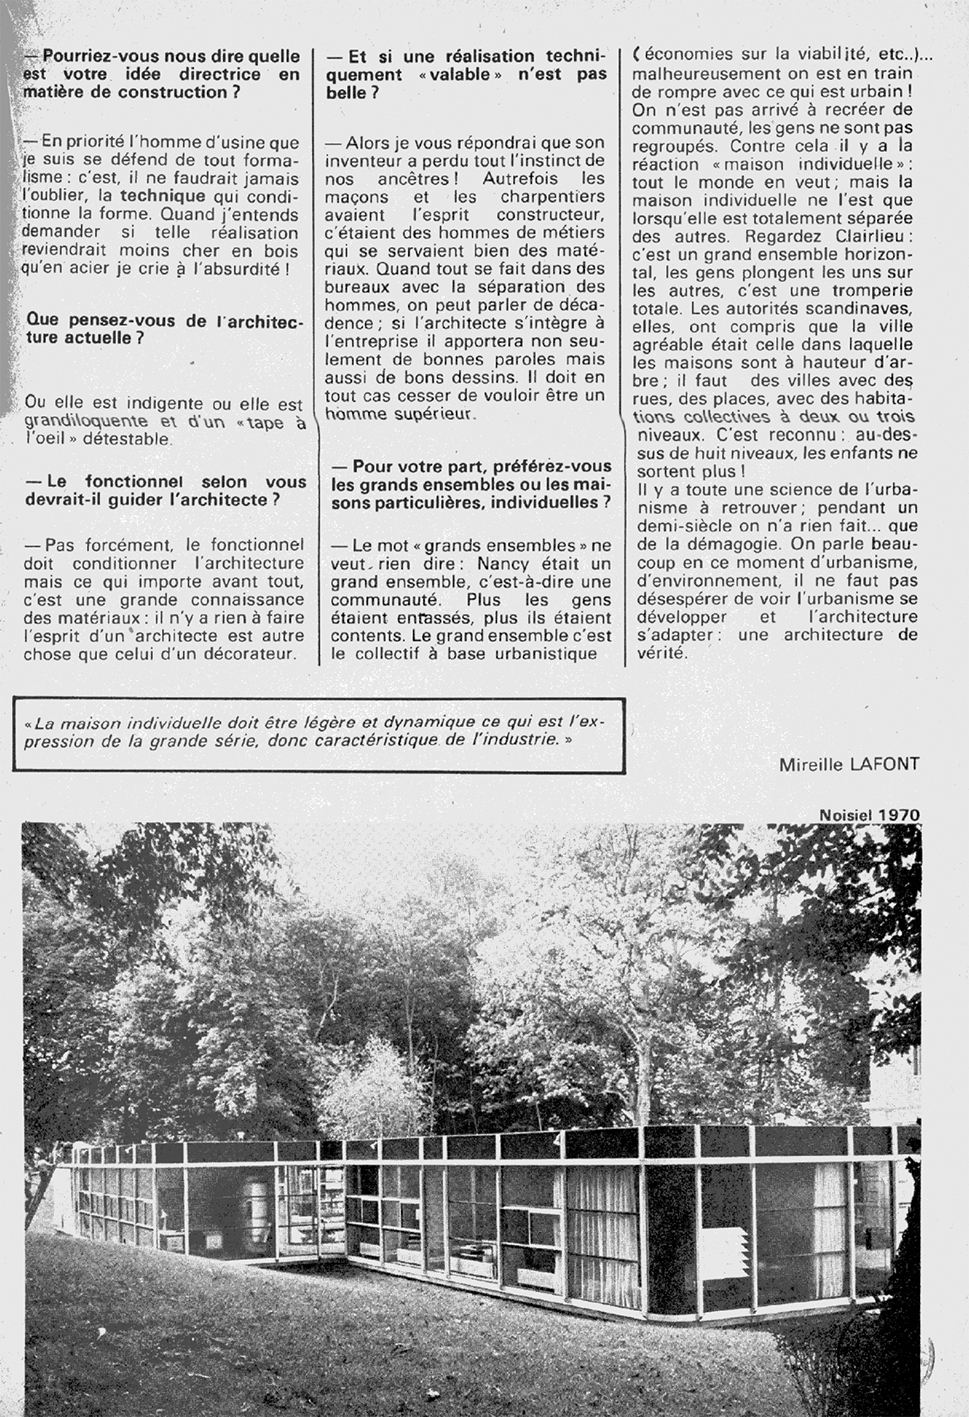 « L’architecture : une industrie », <i>A 31, mensuel de la Lorraine et du Luxembourg,</i> n° 13 (févr. 1974).